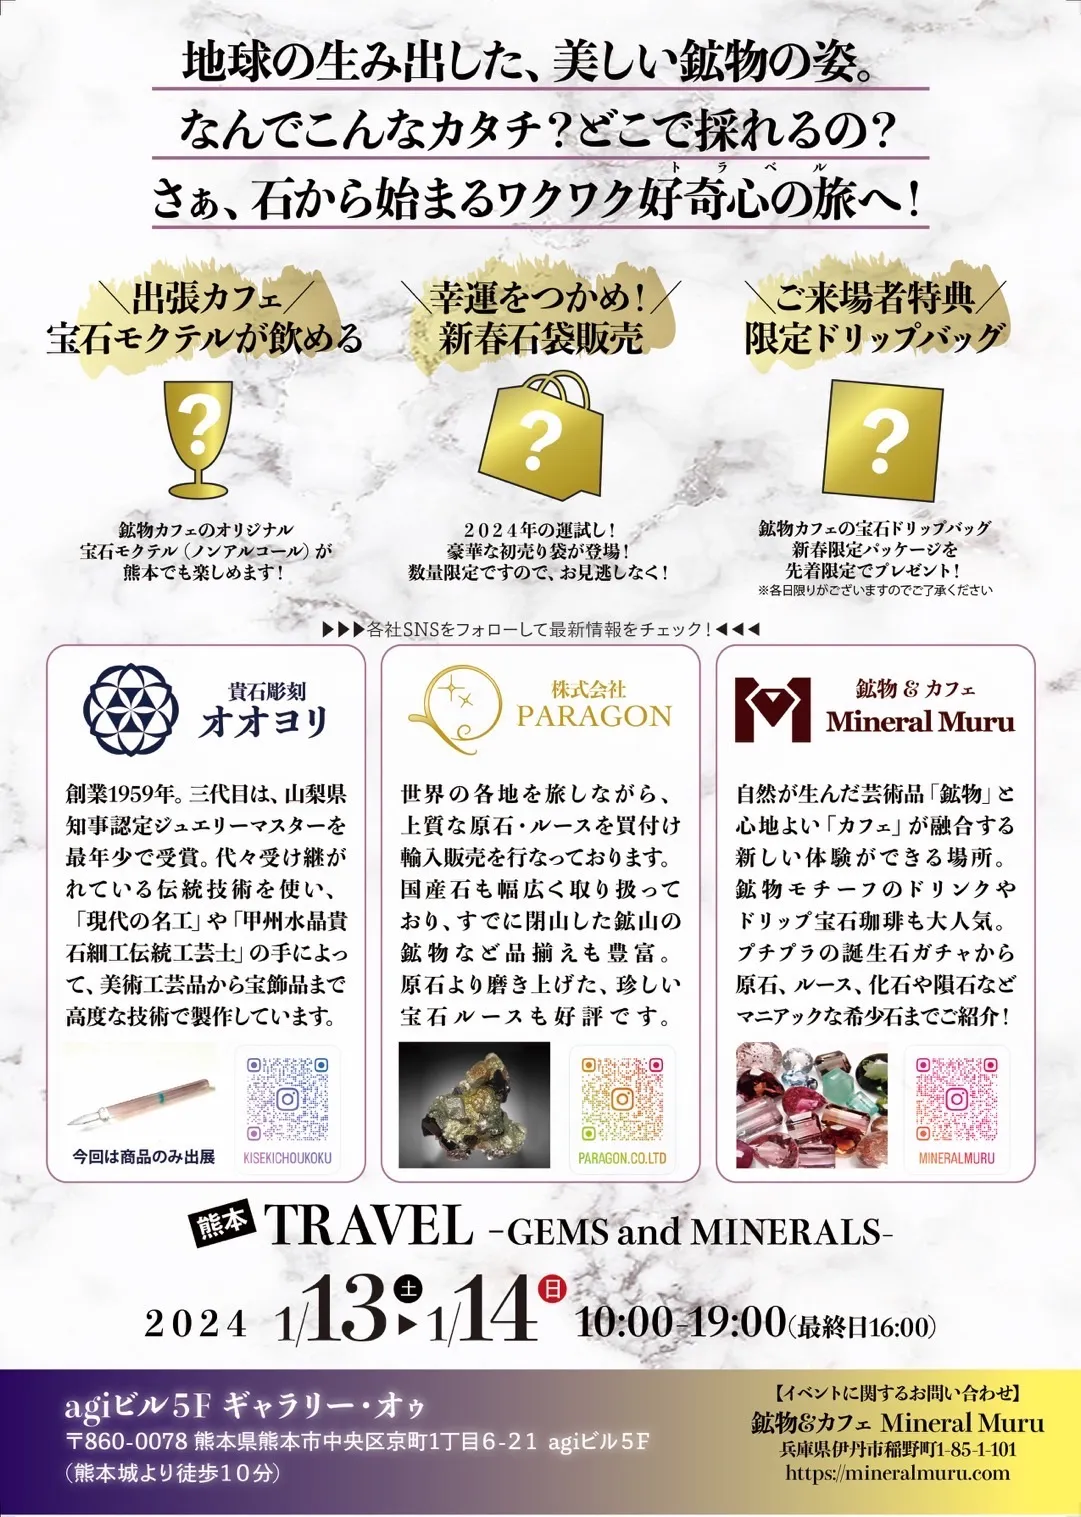 出張、熊本で鉱物カフェ！誕生石モクテルも飲めるイベント「TRAVEL -GEMS and MINERALS-」開催